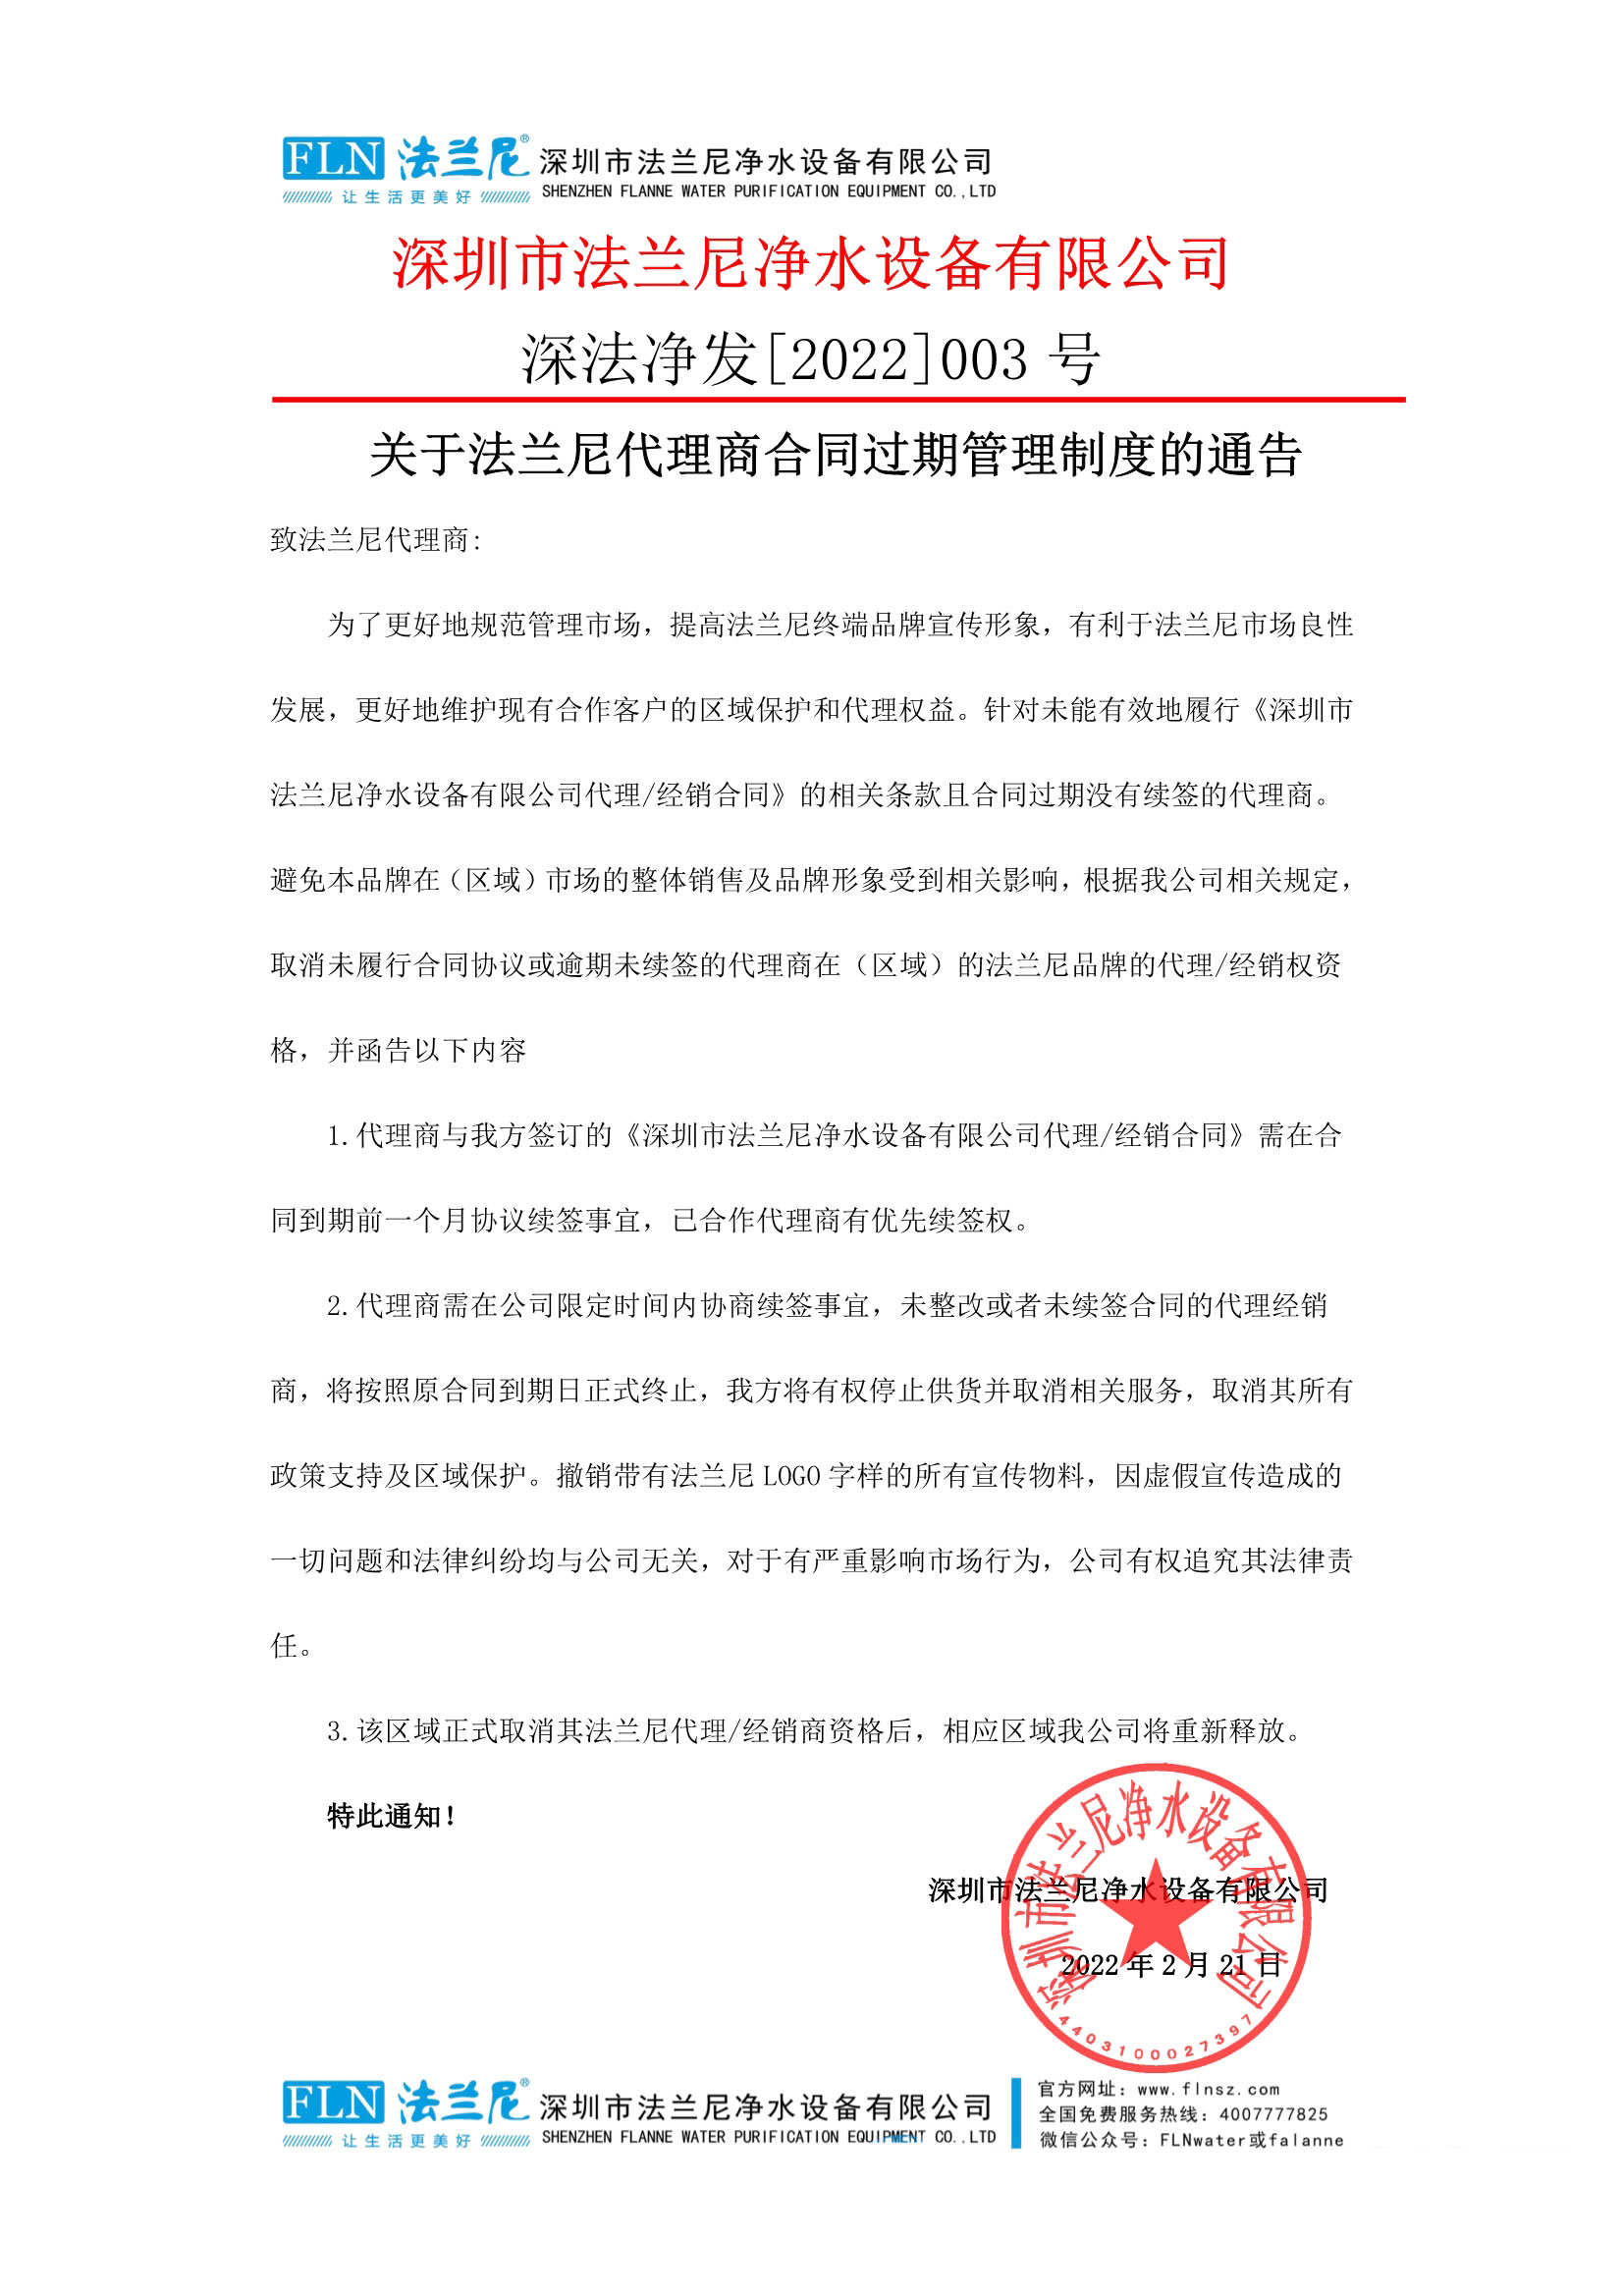 关于2023女足世界杯中国女足代理商合同过期管理制度的通告